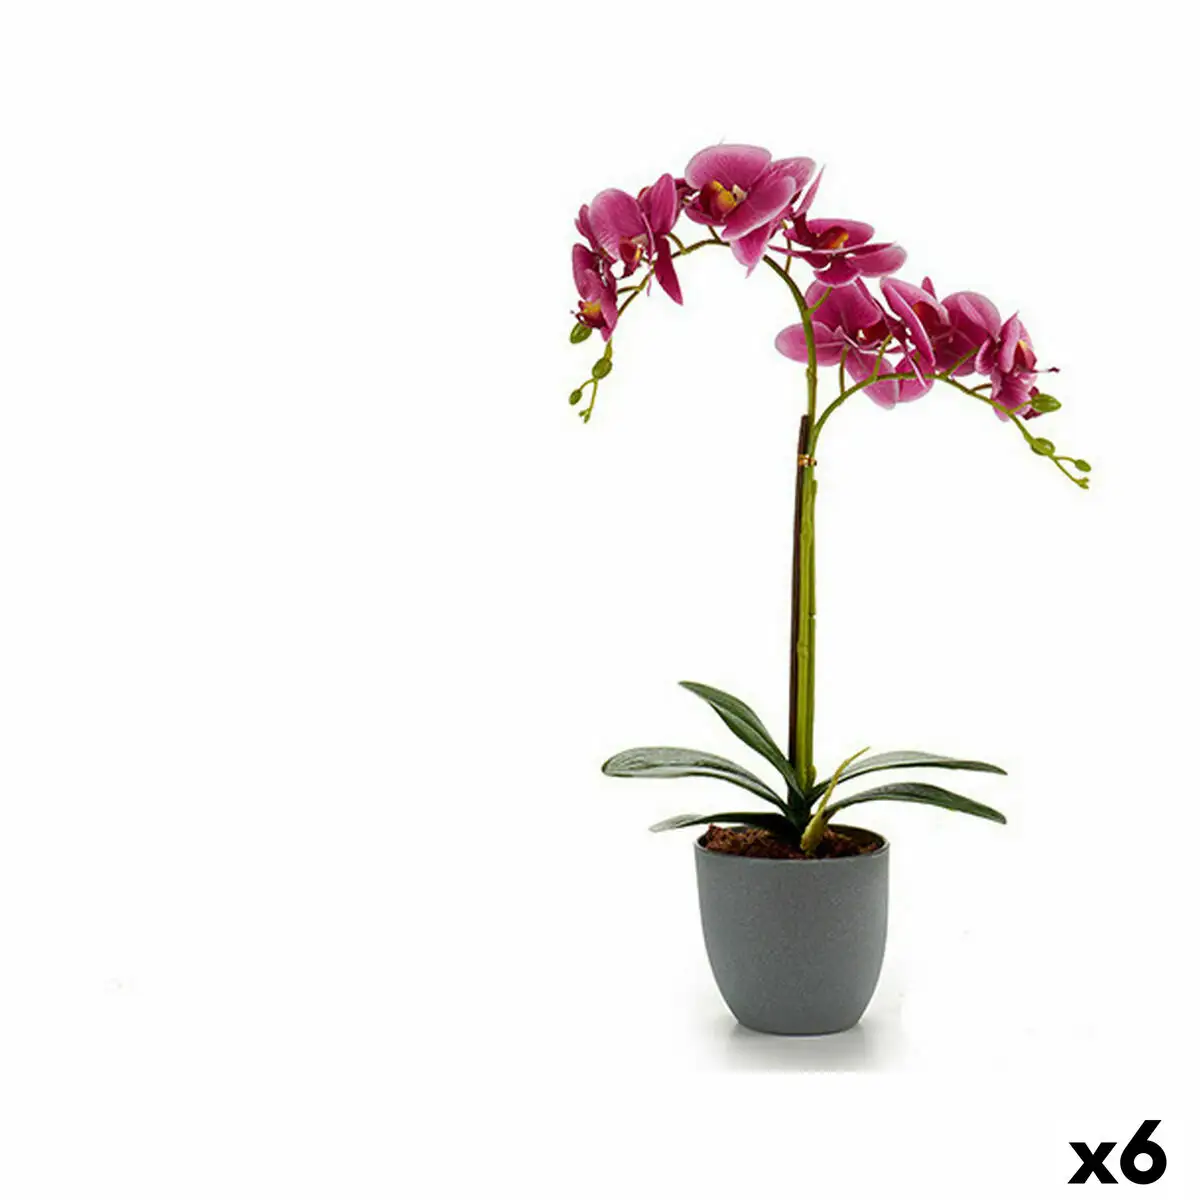 Plante decorative orchidee plastique 20 x 47 5 x 24 cm 6 unites _7130. DIAYTAR SENEGAL - Où Votre Shopping Prend Vie. Explorez notre boutique en ligne pour trouver des articles qui vous ressemblent et qui ajoutent de l'éclat à votre quotidien.